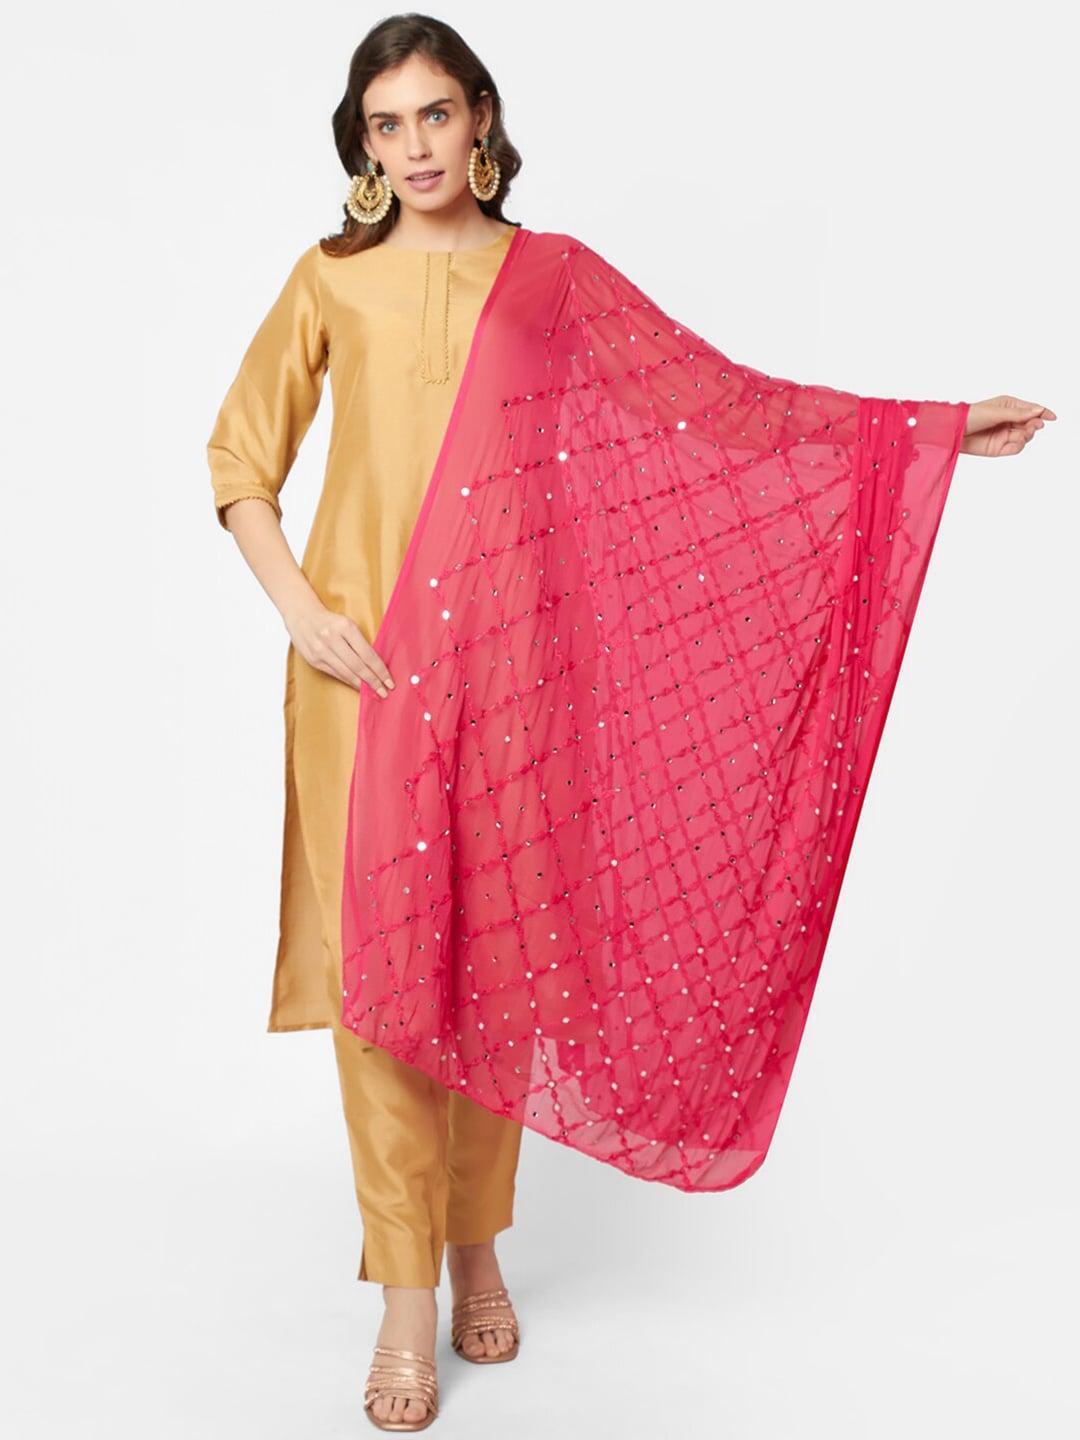 dupatta-bazaar-pink-ethnic-motifs-embroidered-dupatta-with-mirror-work